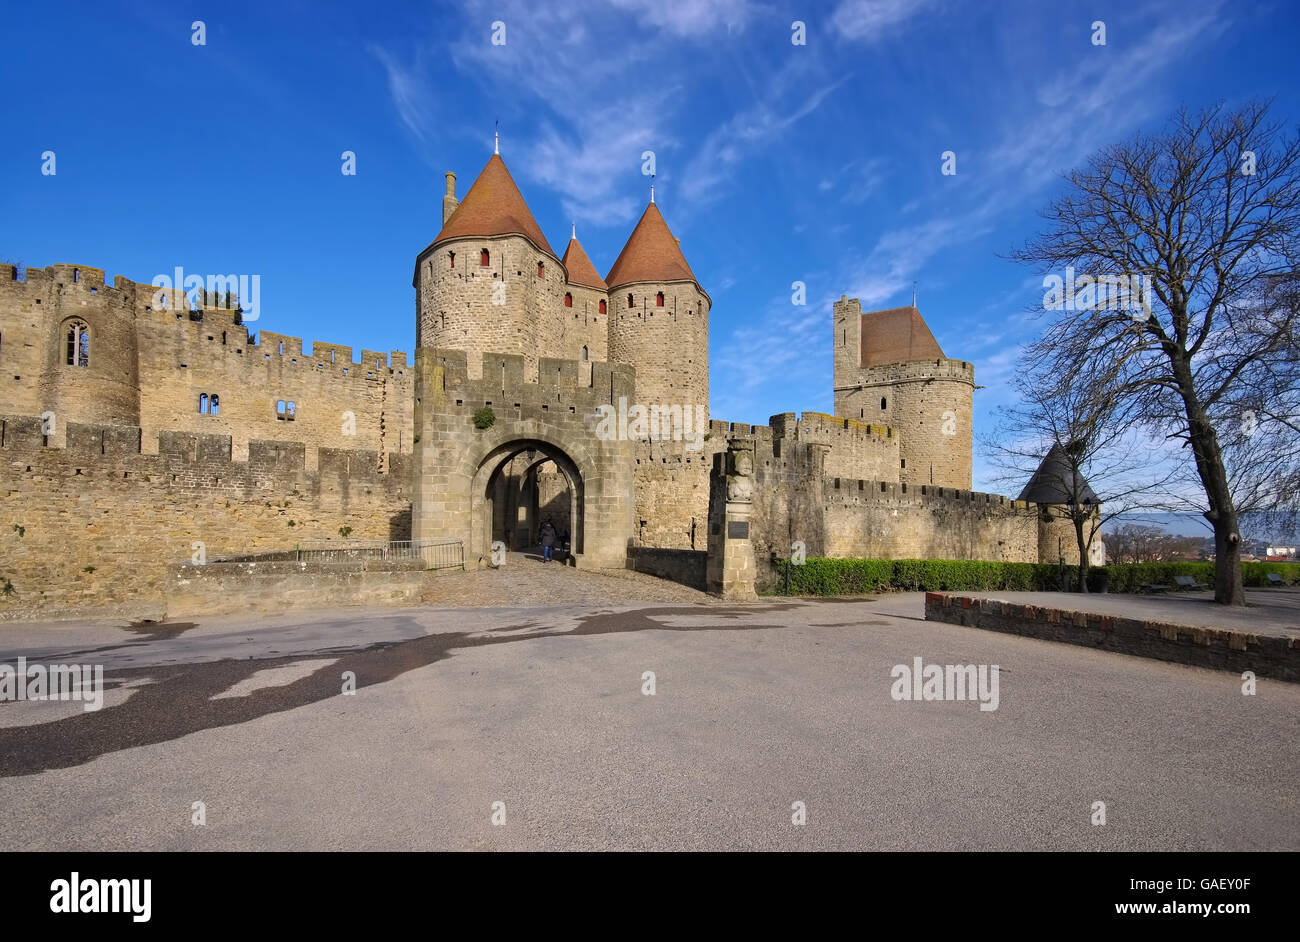 Citer von Carcassonne - Château de Carcassonne dans le sud de la France Banque D'Images